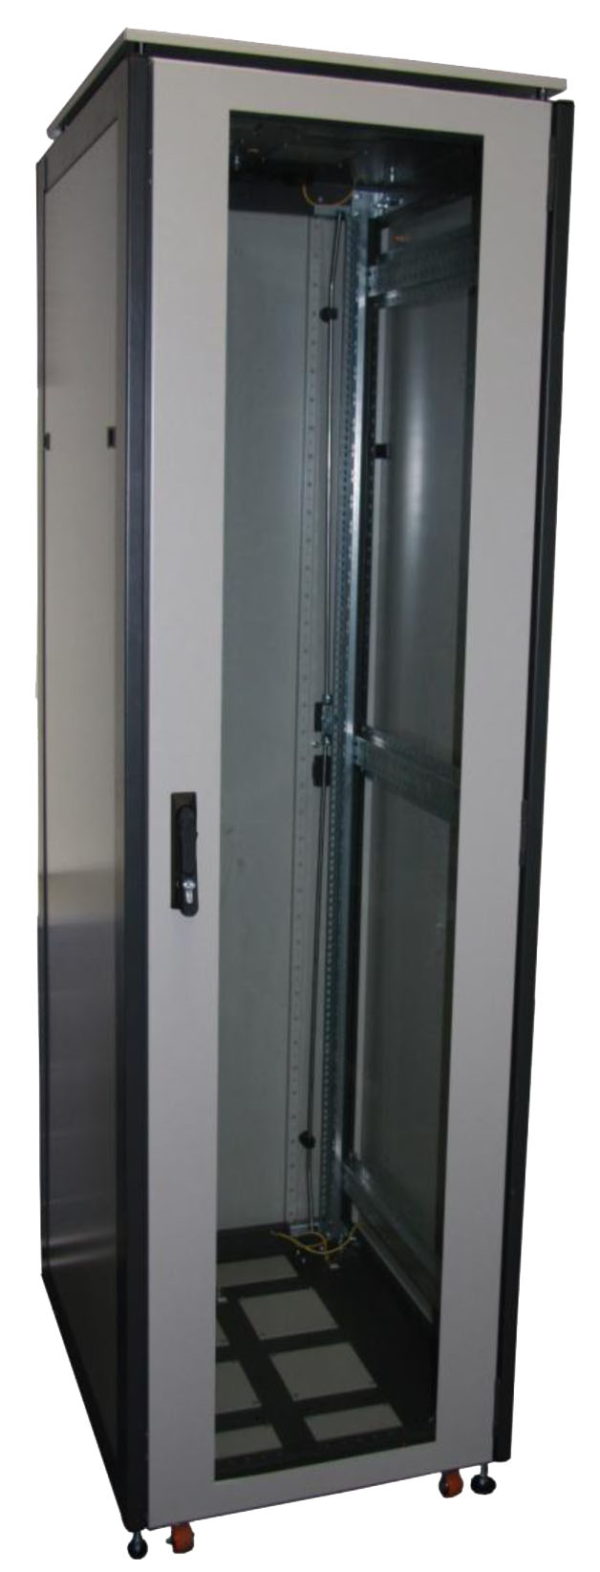 ССКТБ ТОМАСС ШТК-6820Э-04 - шкаф телекоммуникационный 19", 42U, 600х800х2000 мм, с двумя металлическими дверьми